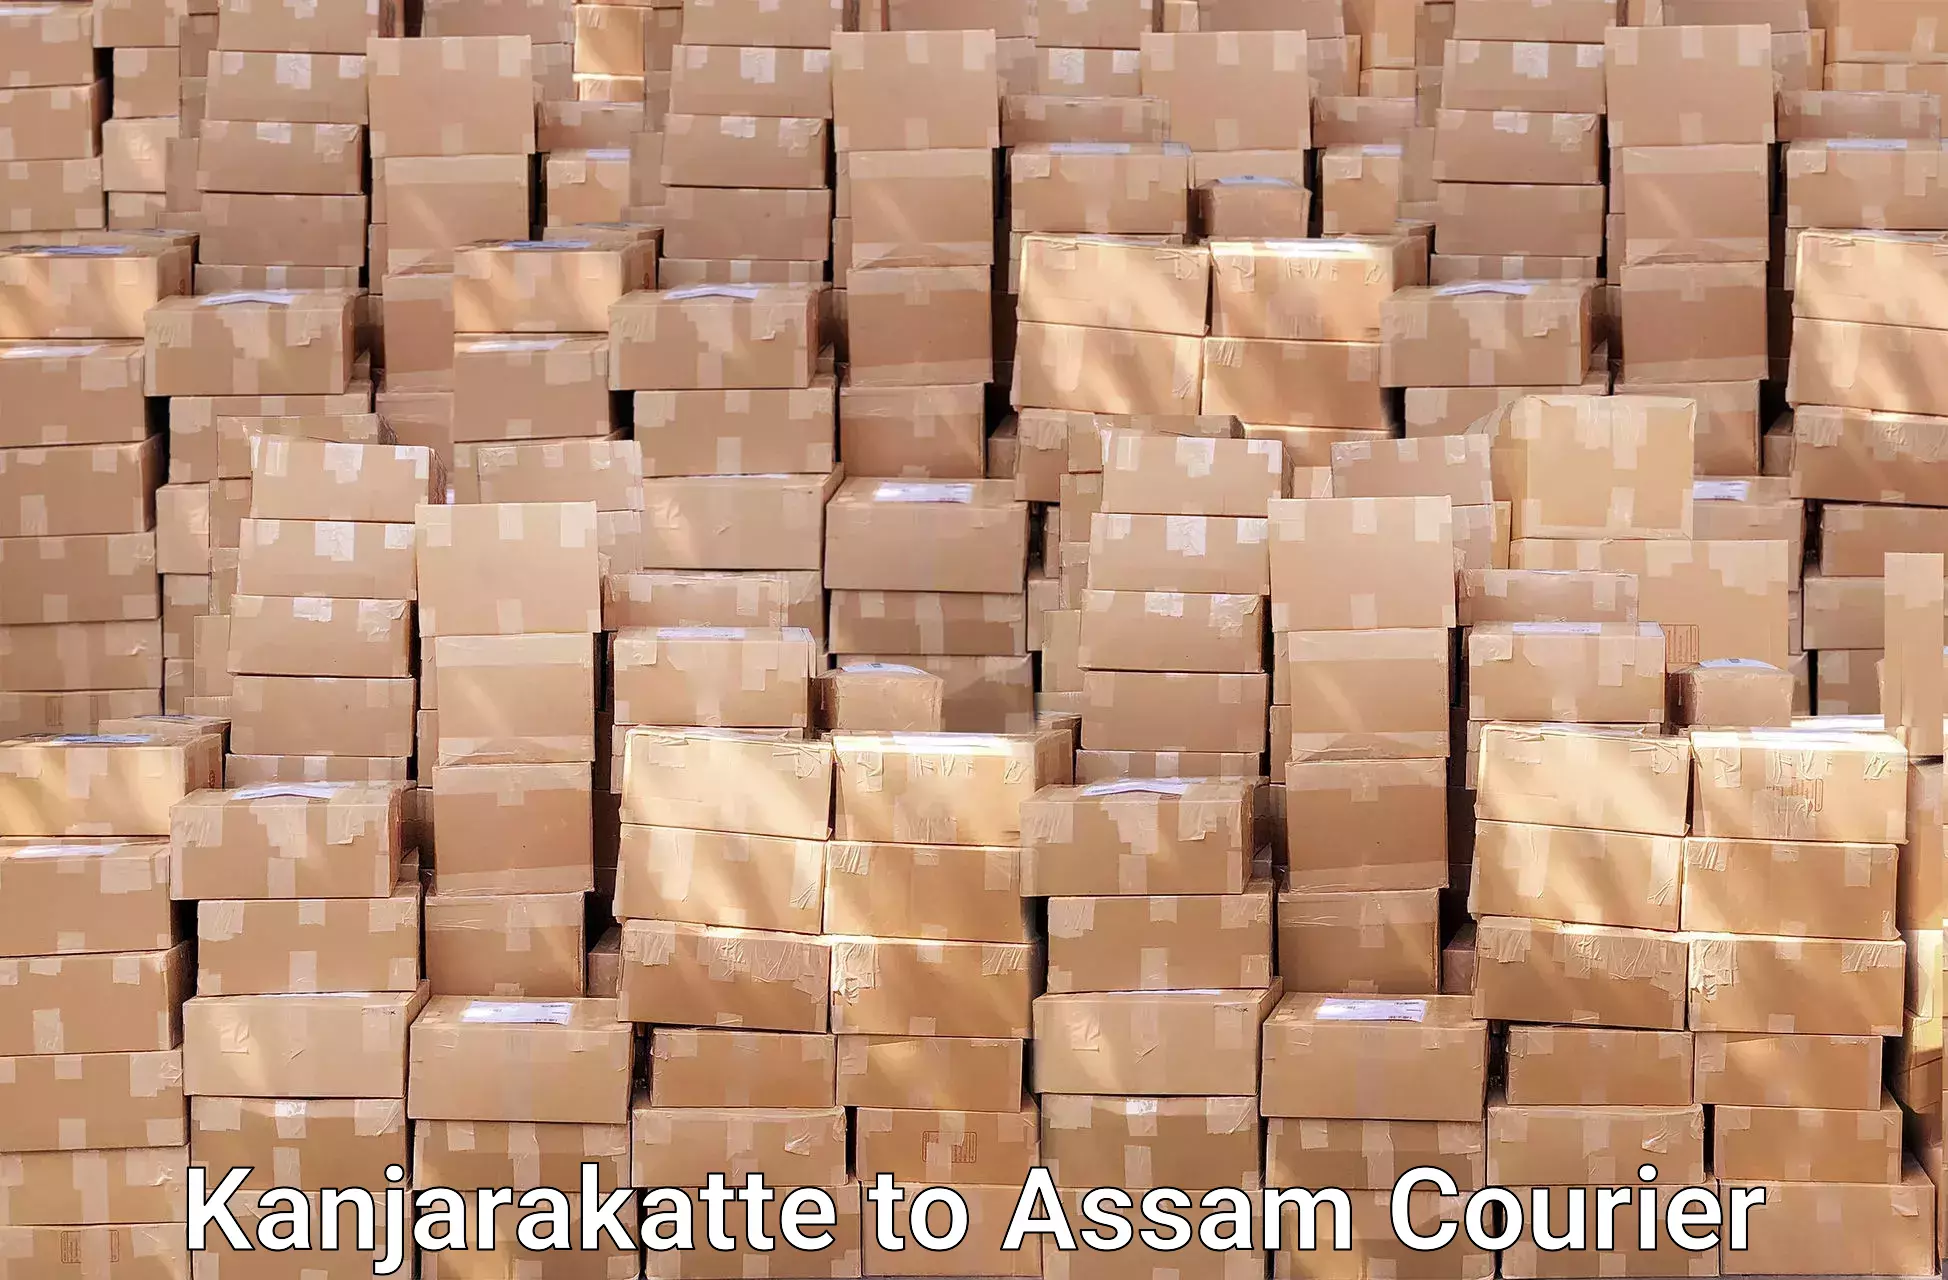 Furniture moving specialists Kanjarakatte to Assam